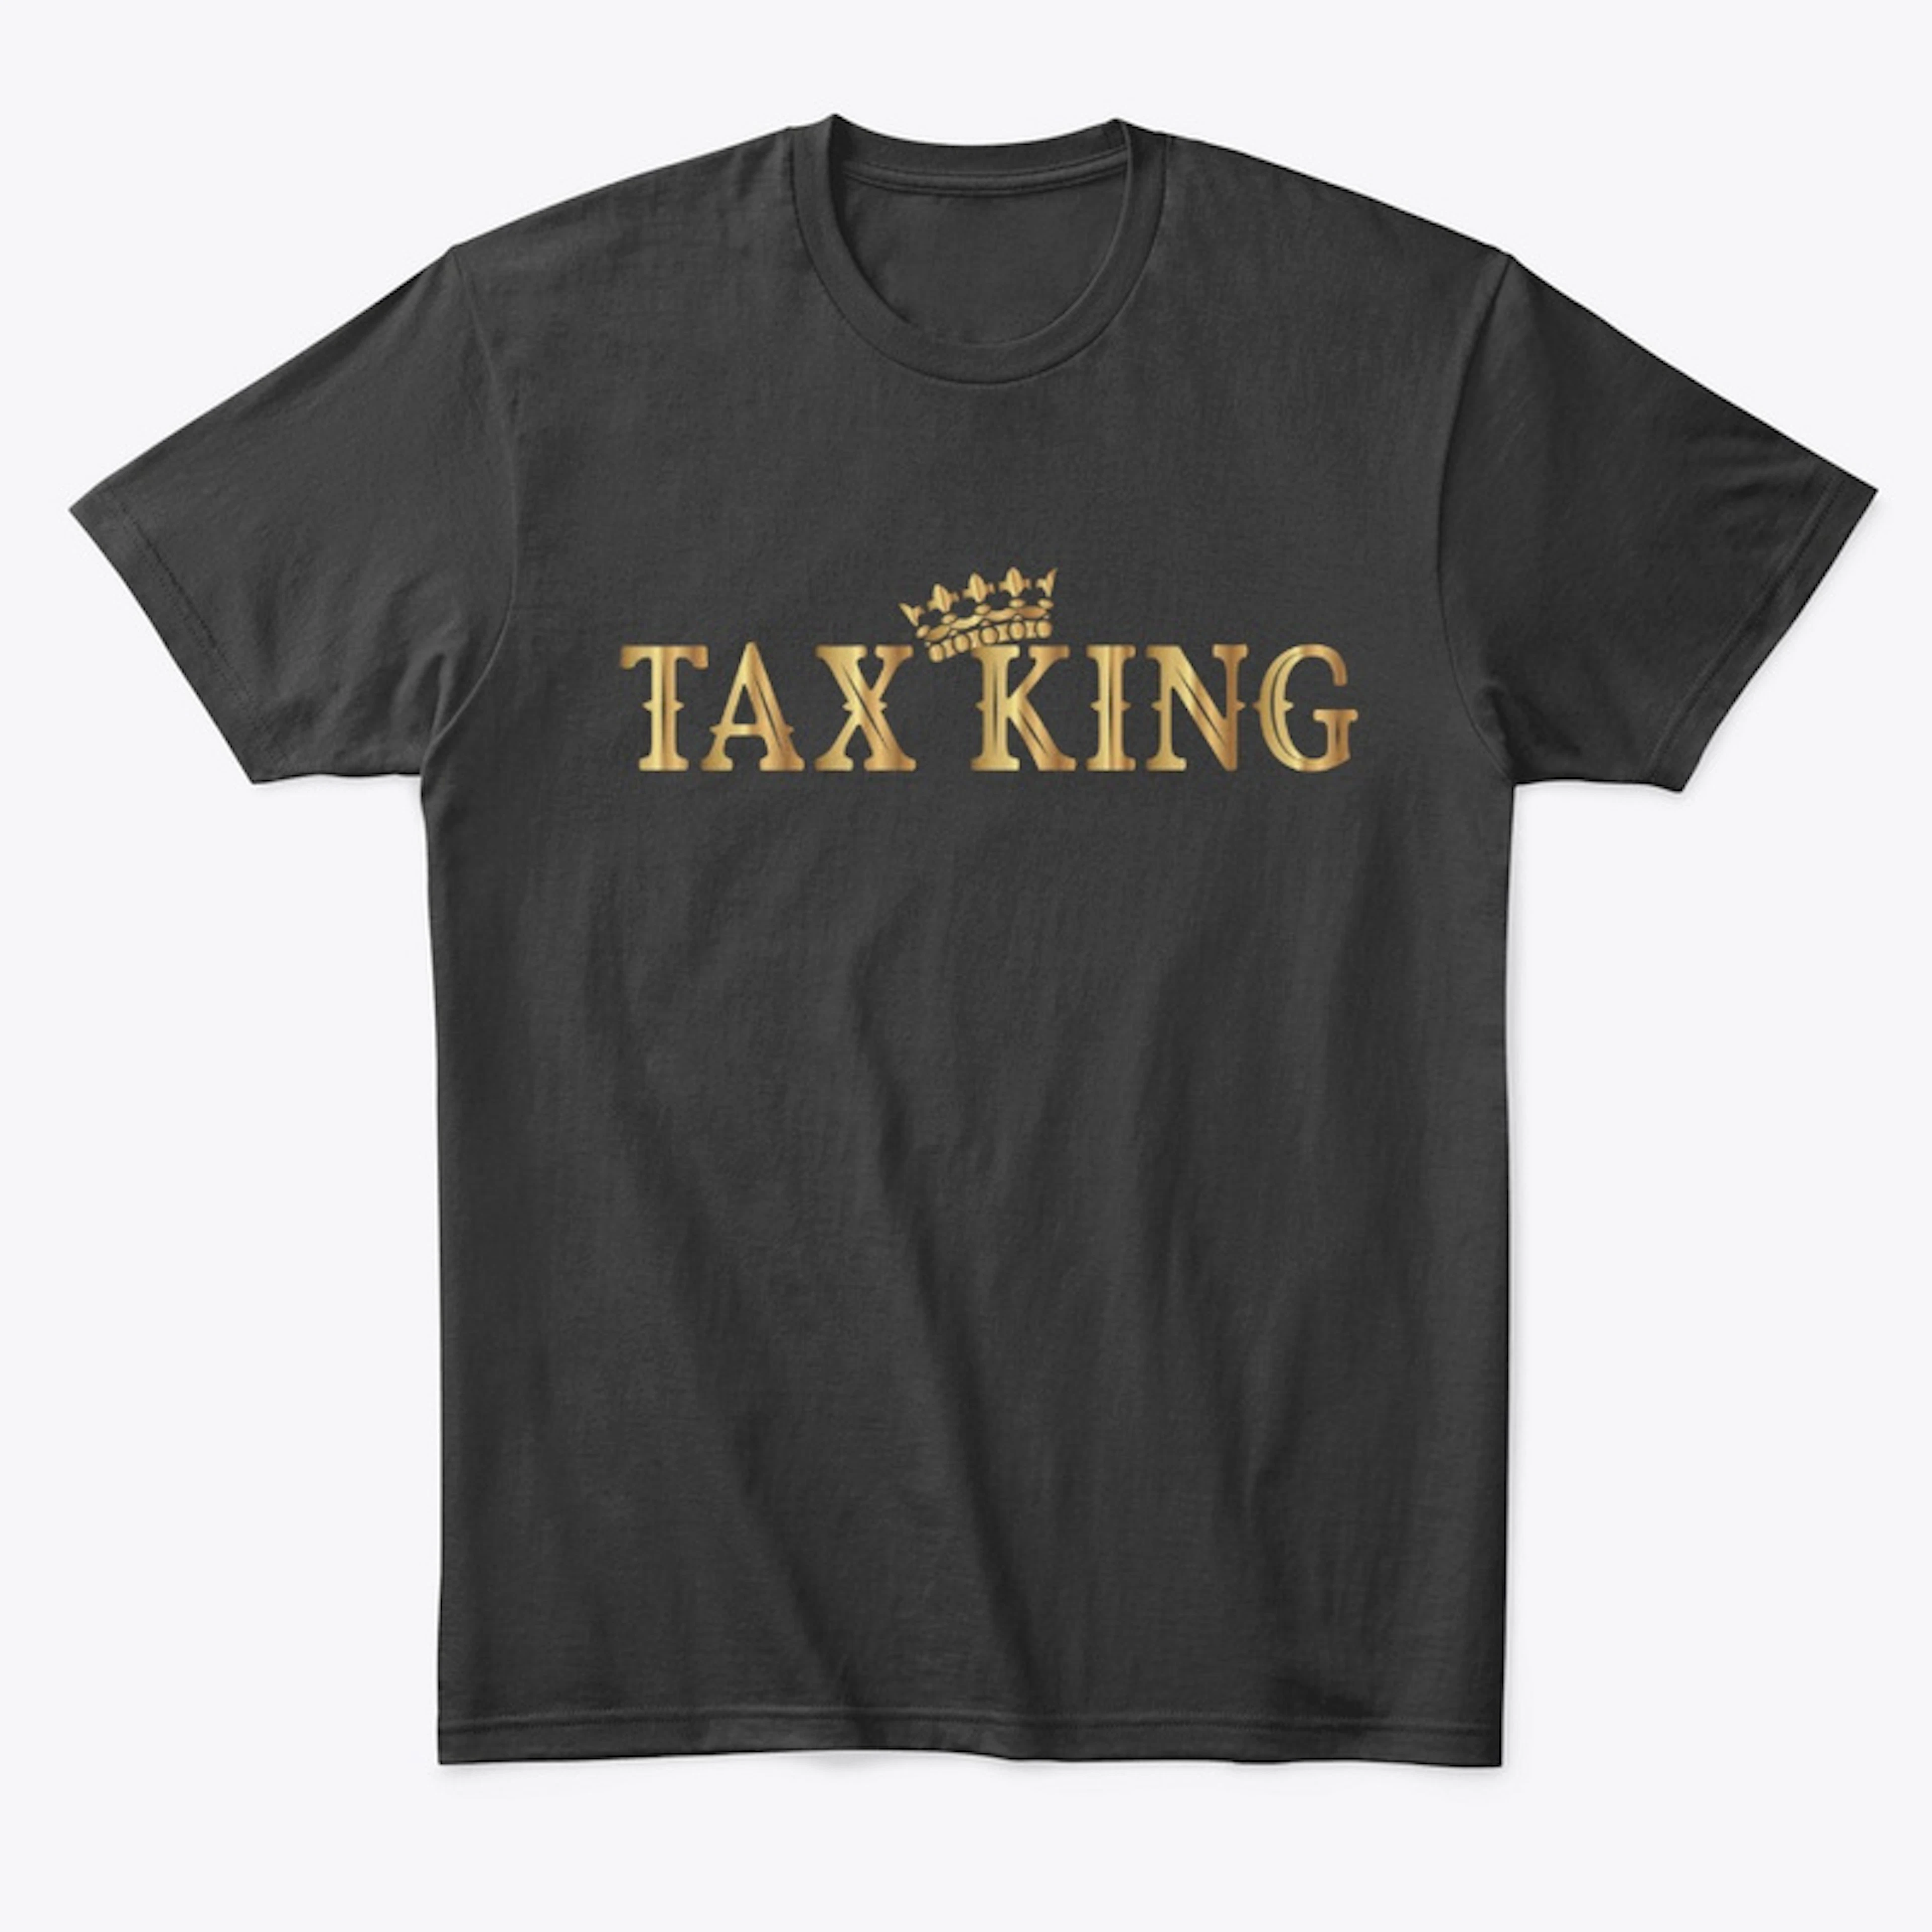 Tax King